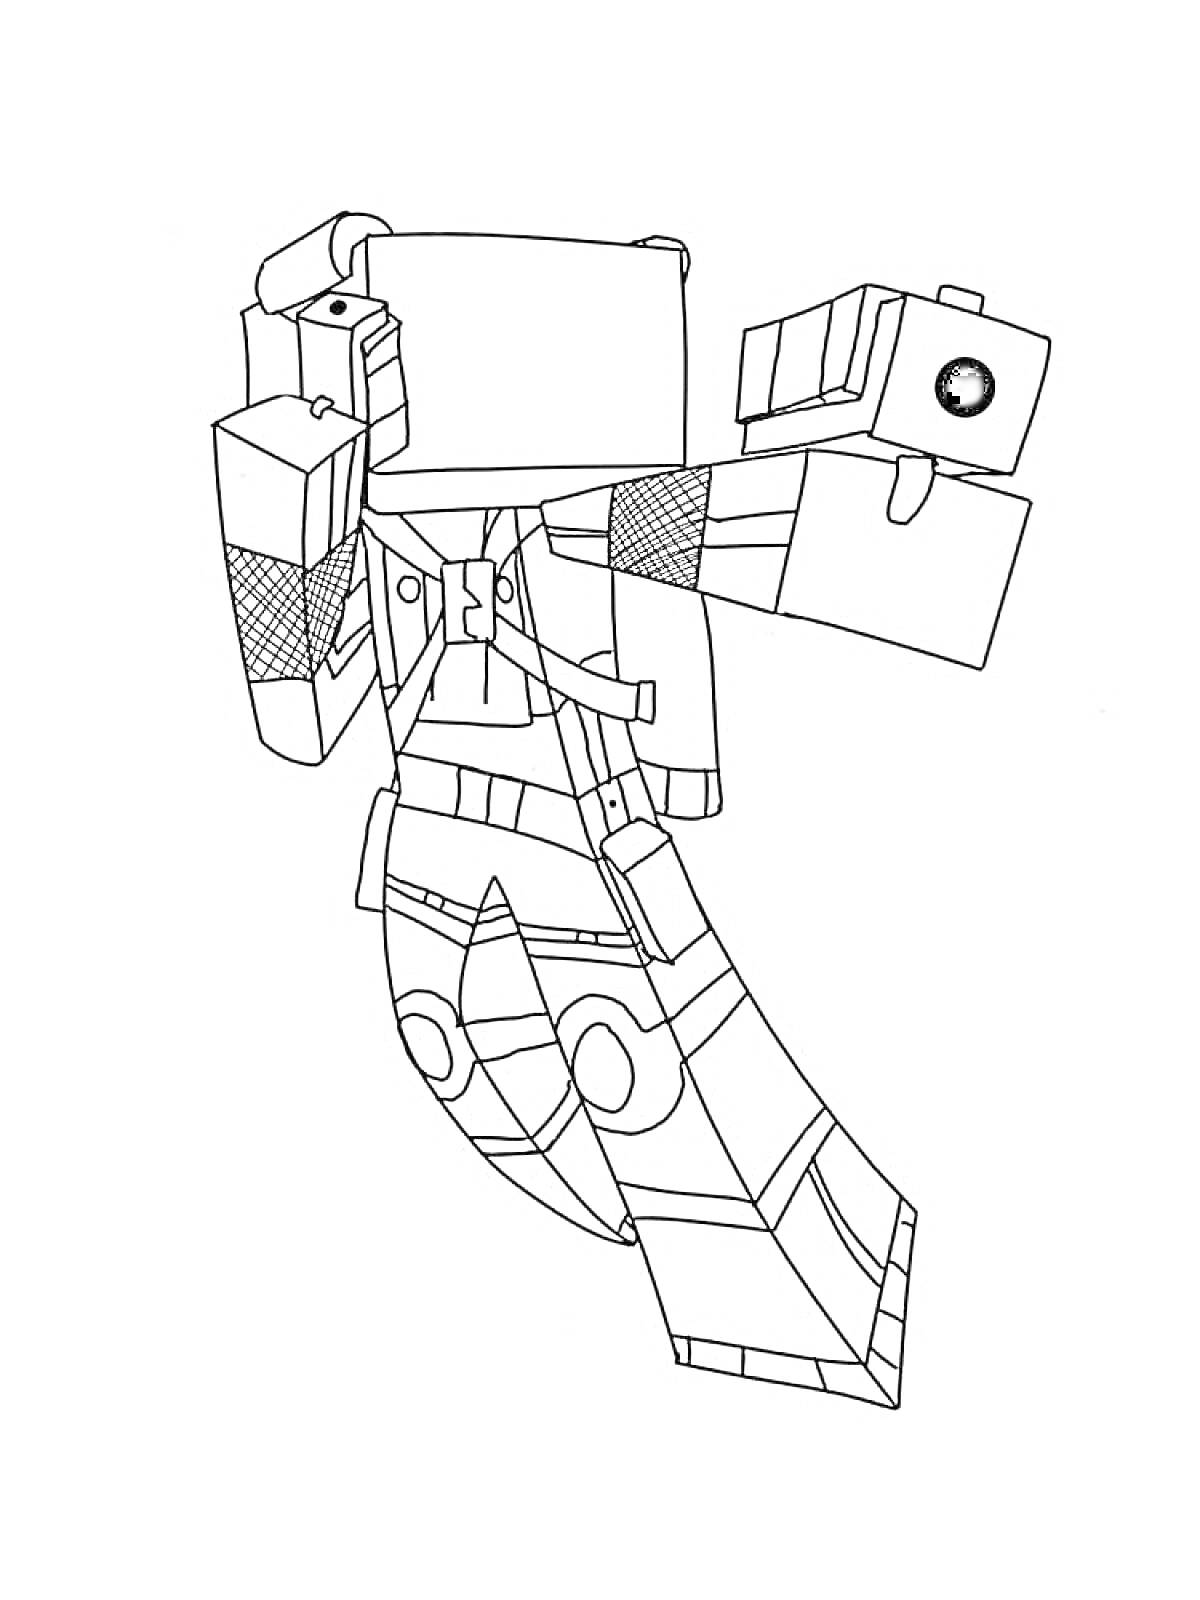 Раскраска Робот-персонаж Roblox с крупными руками и ногами, поднятыми в динамичной позе